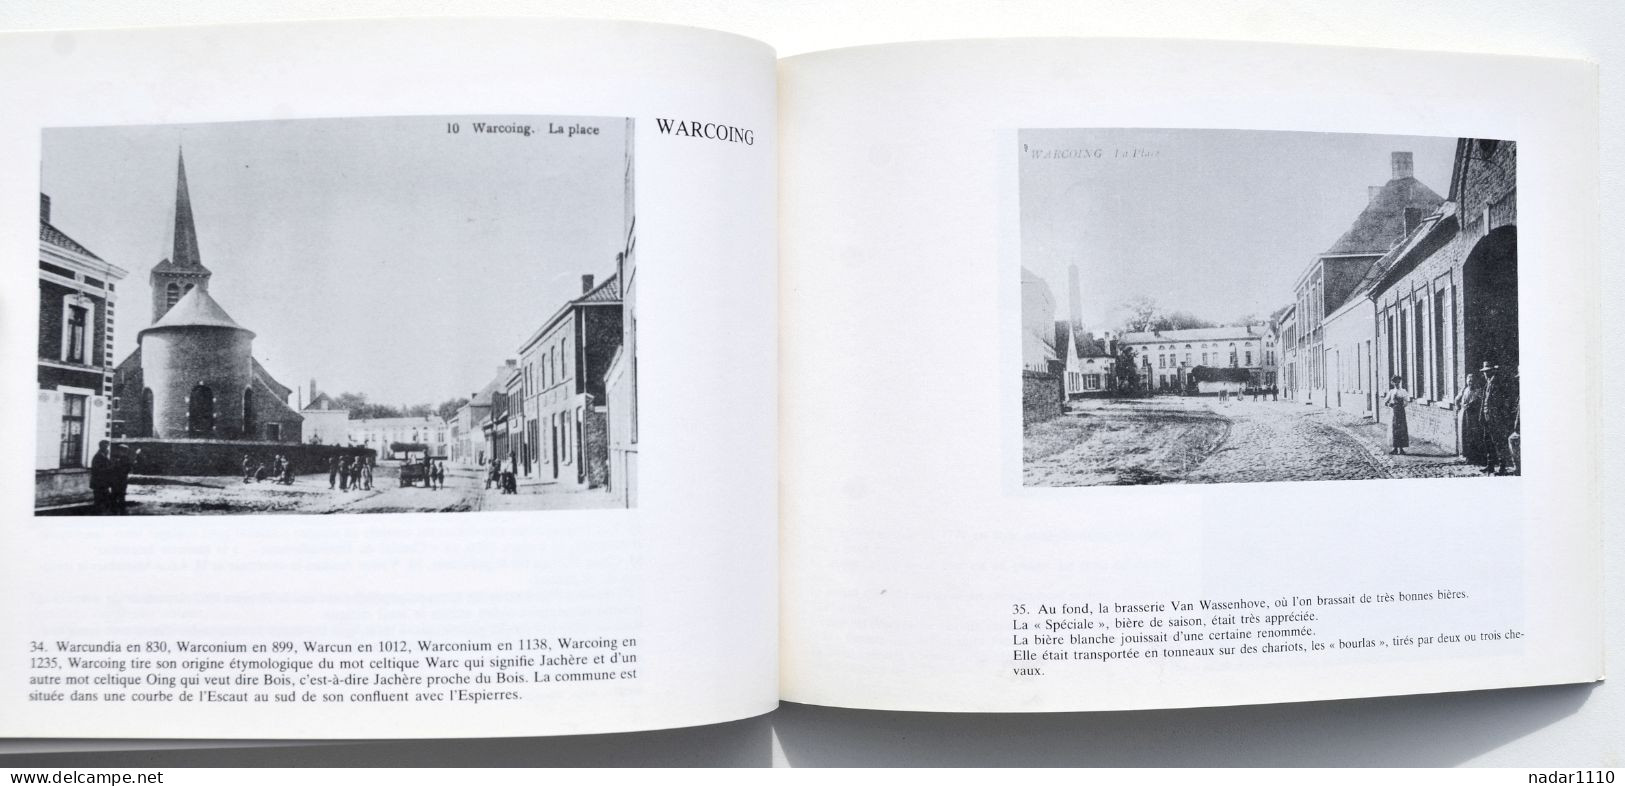 L'entité de Pecq en cartes postales anciennes - Warcoing, Hérinnes, Obigies, Esquelmes.